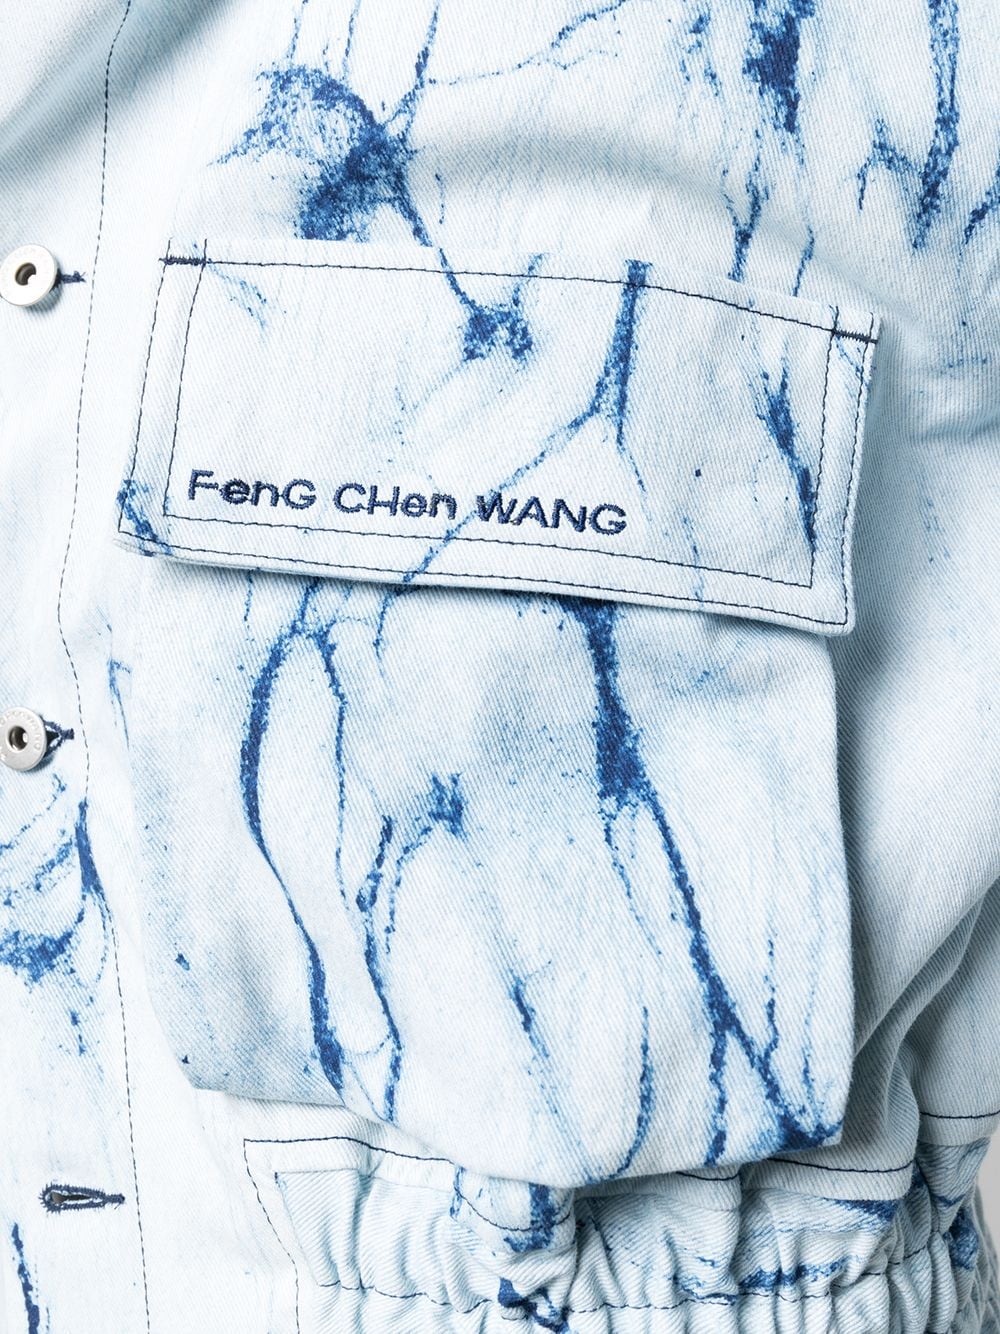 фото Feng chen wang джинсовая куртка с принтом тай-дай